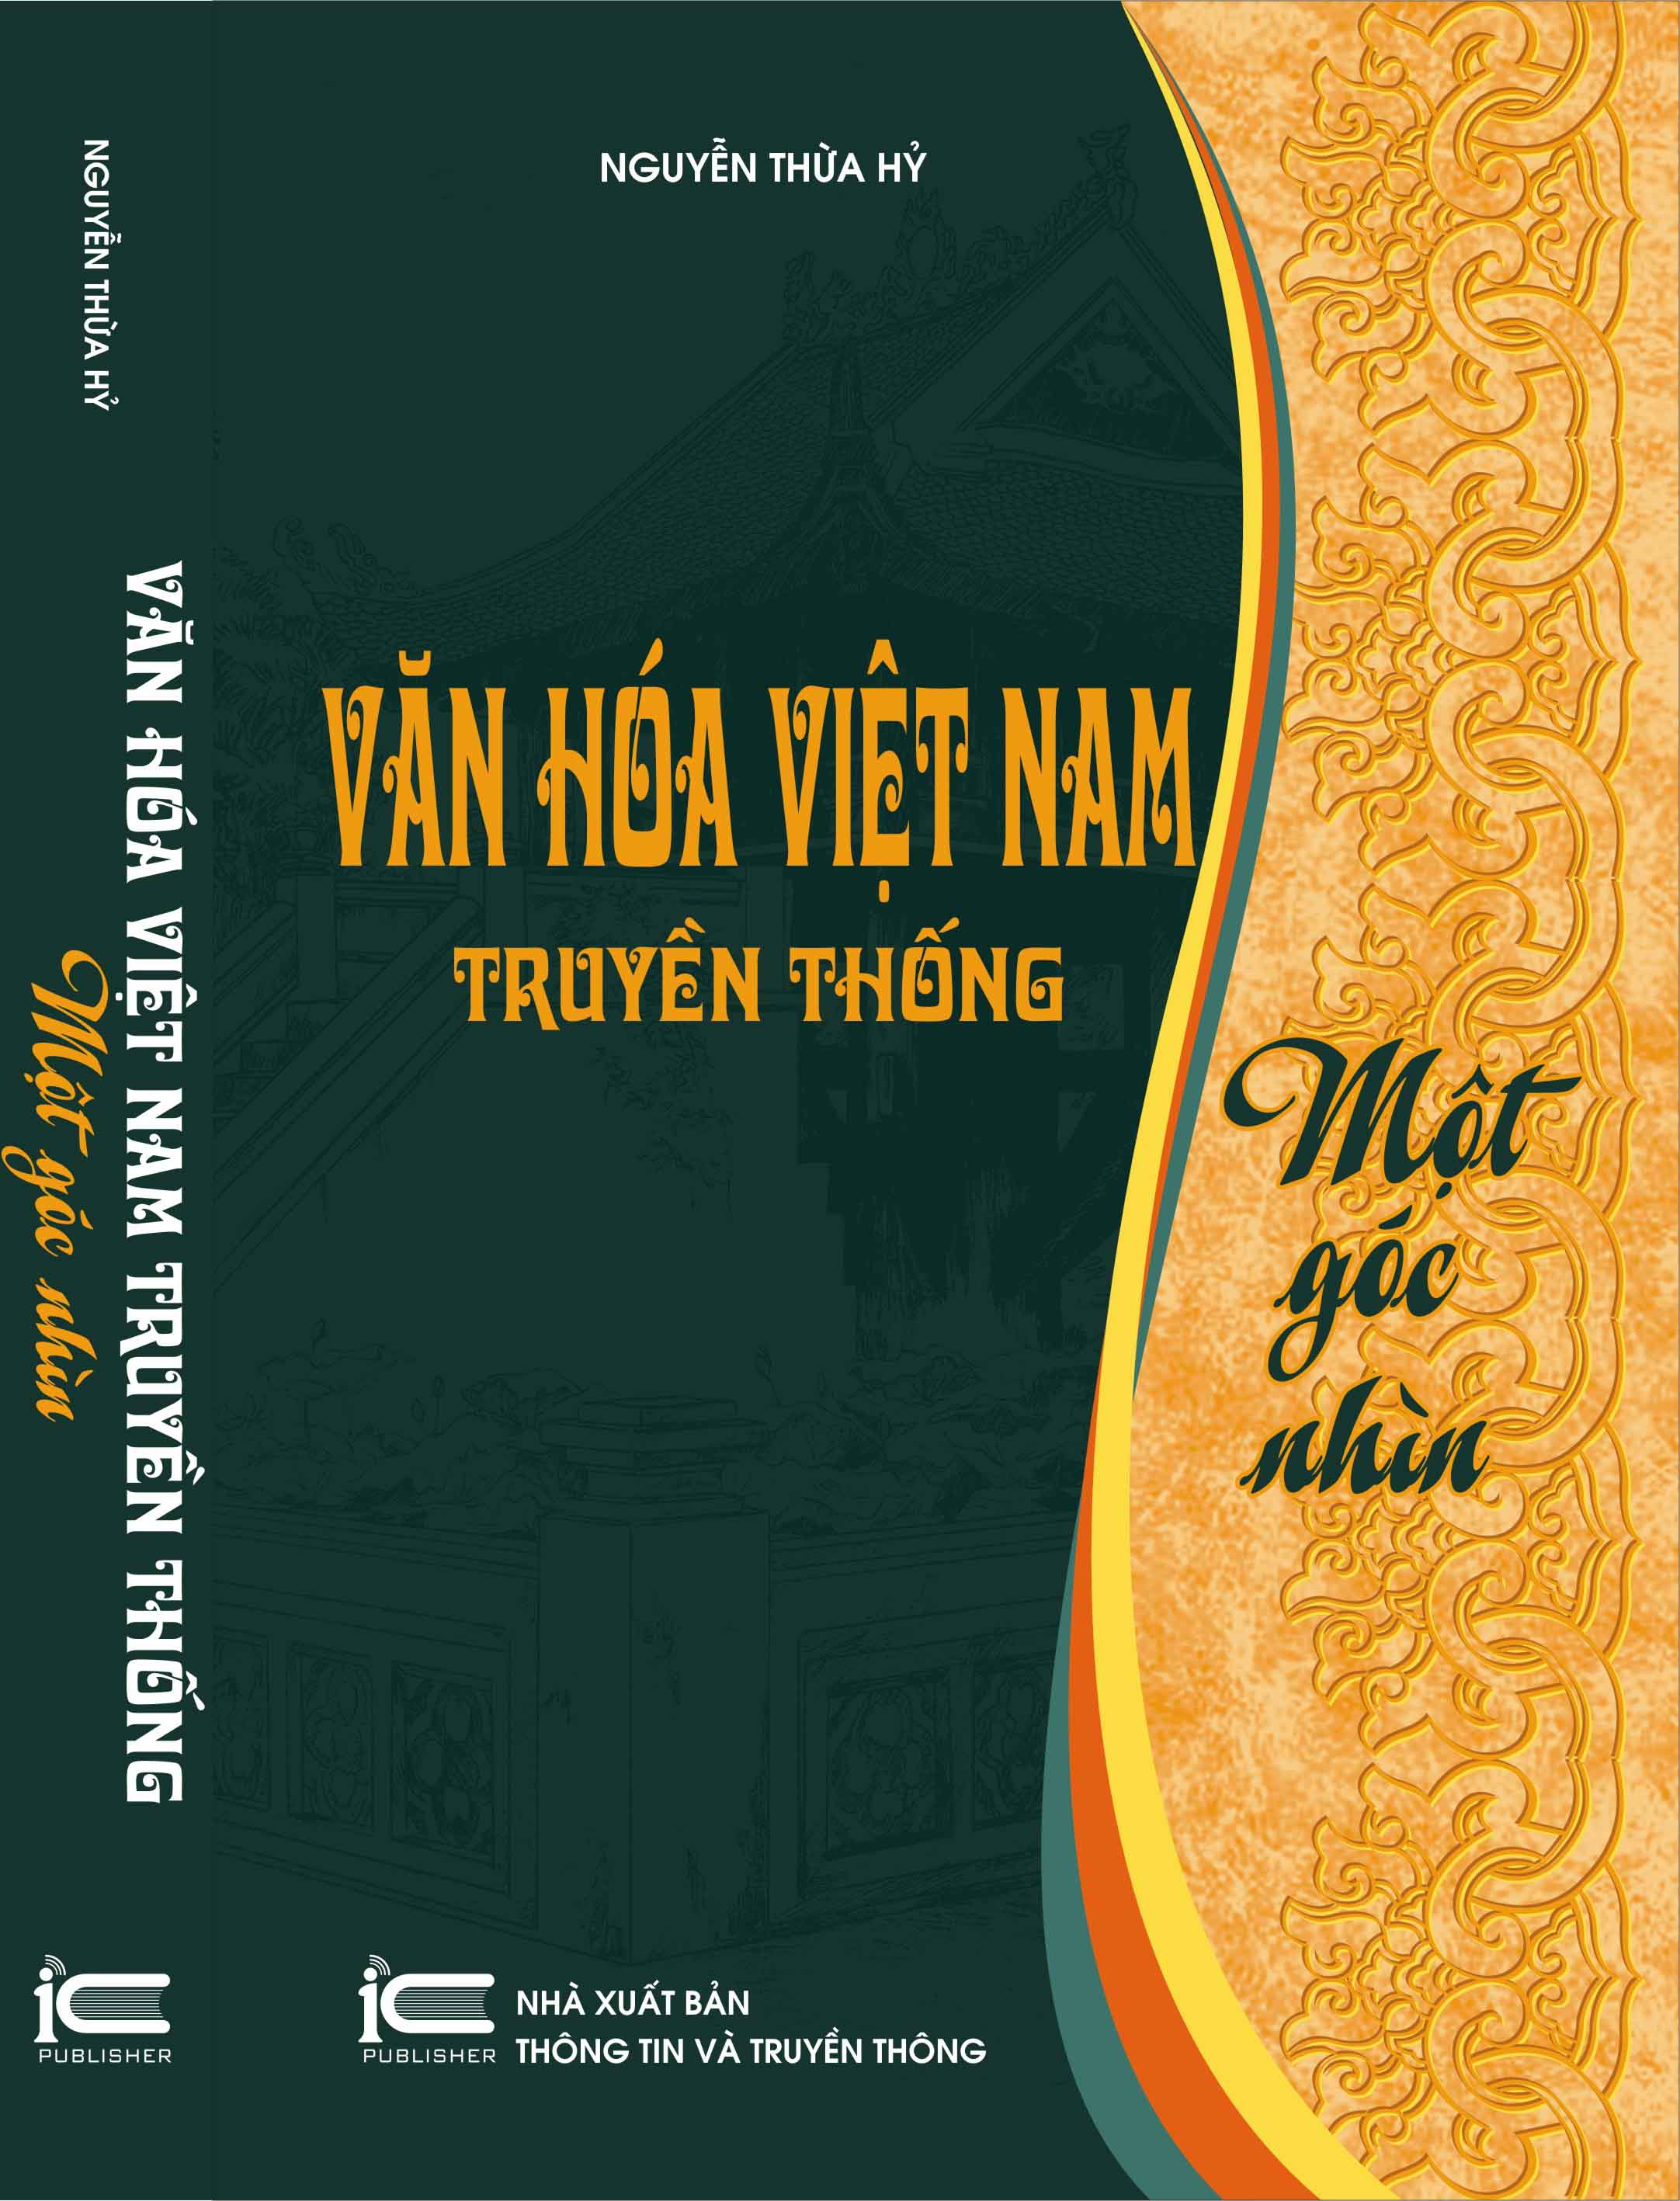 sách văn hóa xã hội Văn hóa Việt Nam truyền thống – Một góc nhìn  nguyễn thừa hy